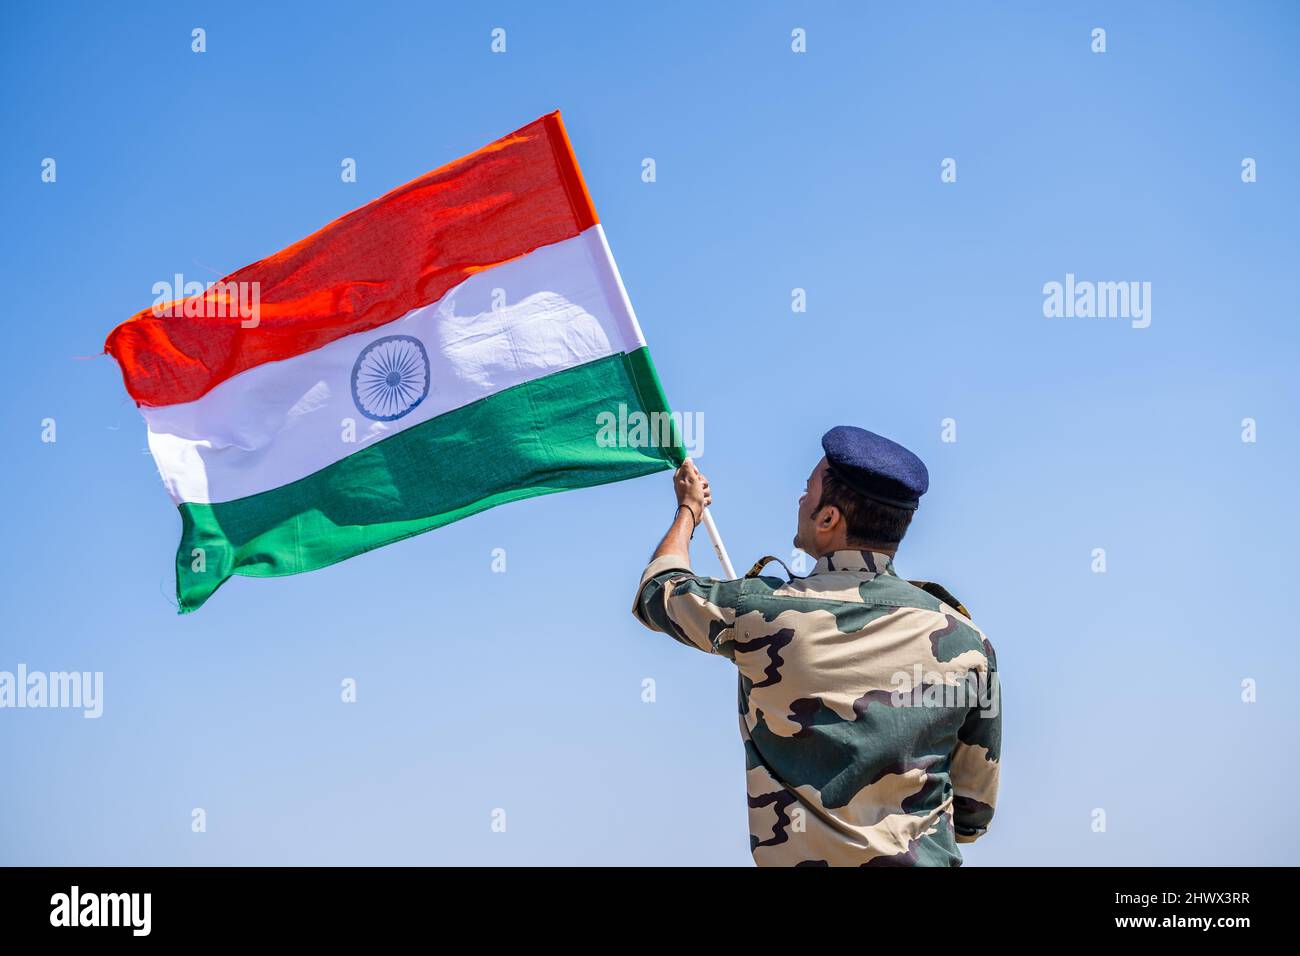 Soldat der indischen Armee hält winkende indische Flagge auf dem Berg - Konzept der Unabhängigkeit oder abstoßenden Tag Feier, Patriotismus und Freiheit Stockfoto